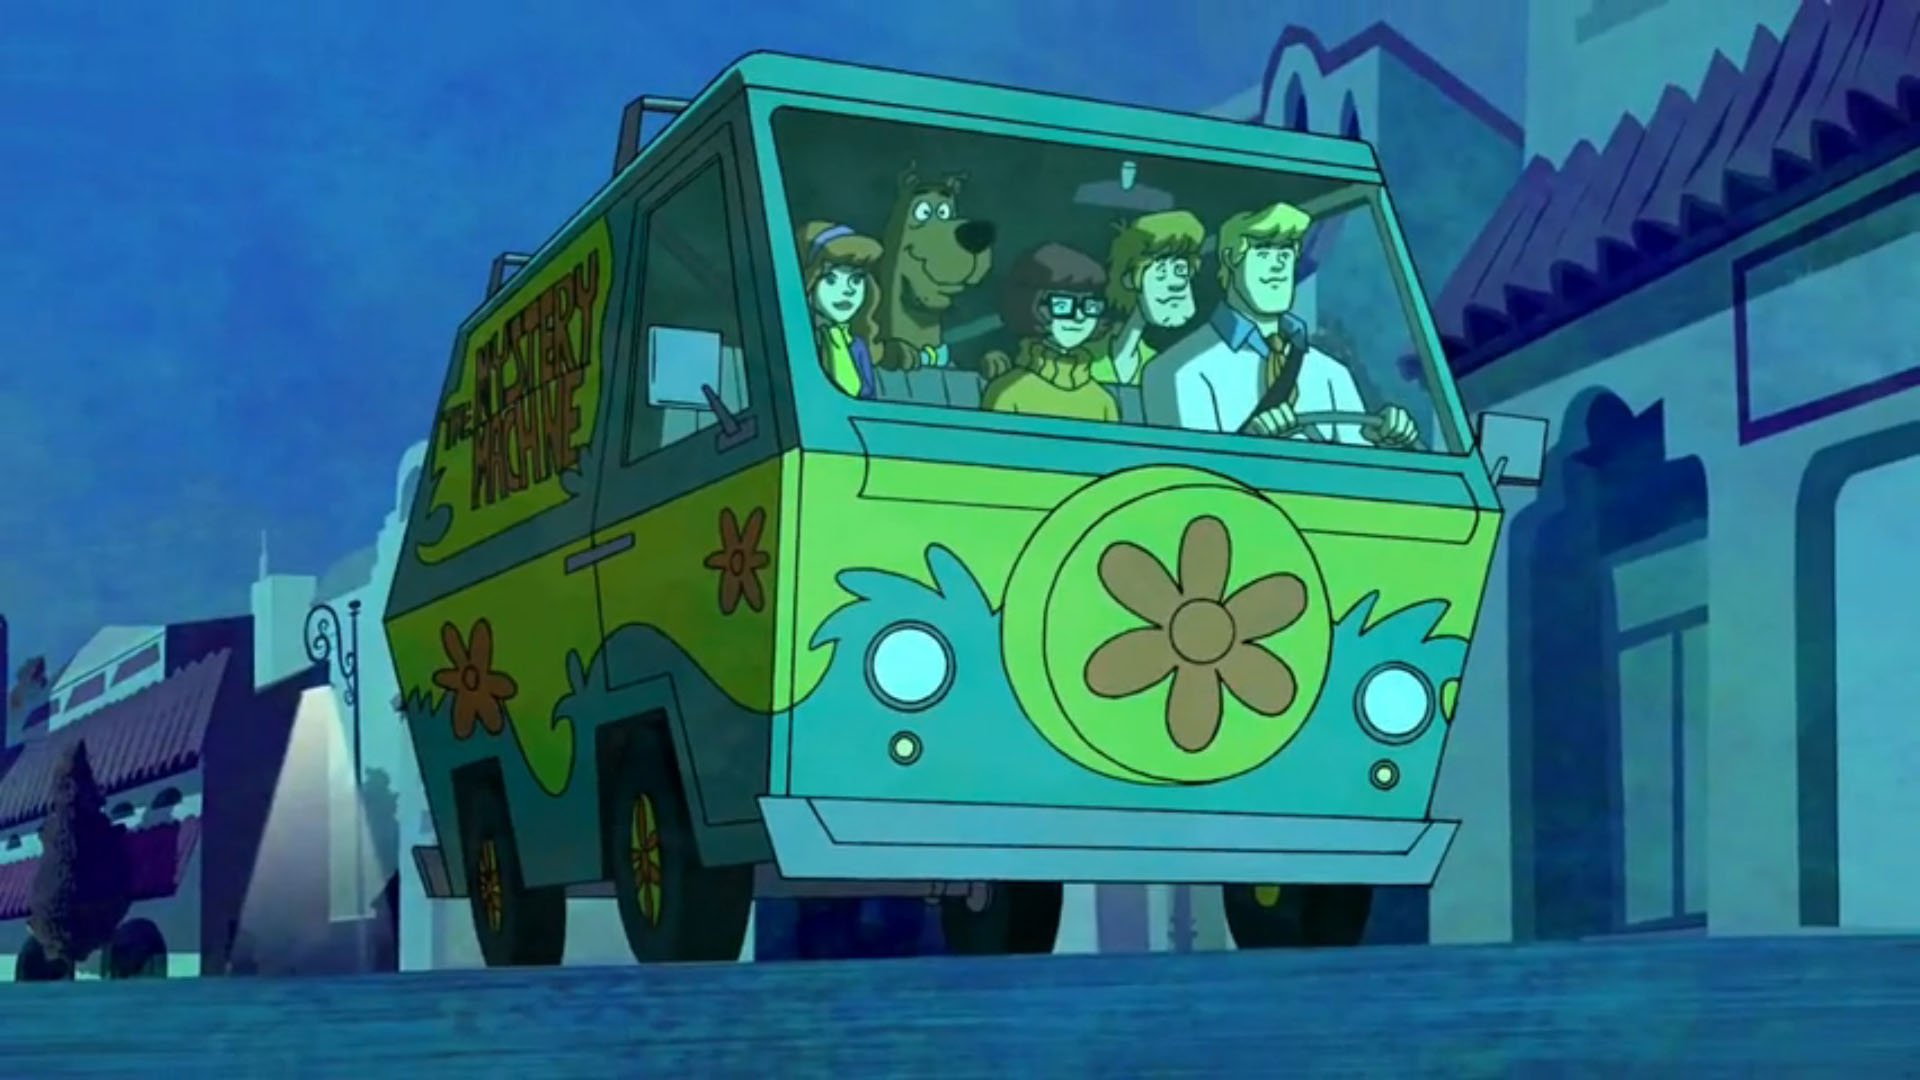 Descargar fondos de escritorio de Scooby Doo: Night Of 100 Frights HD